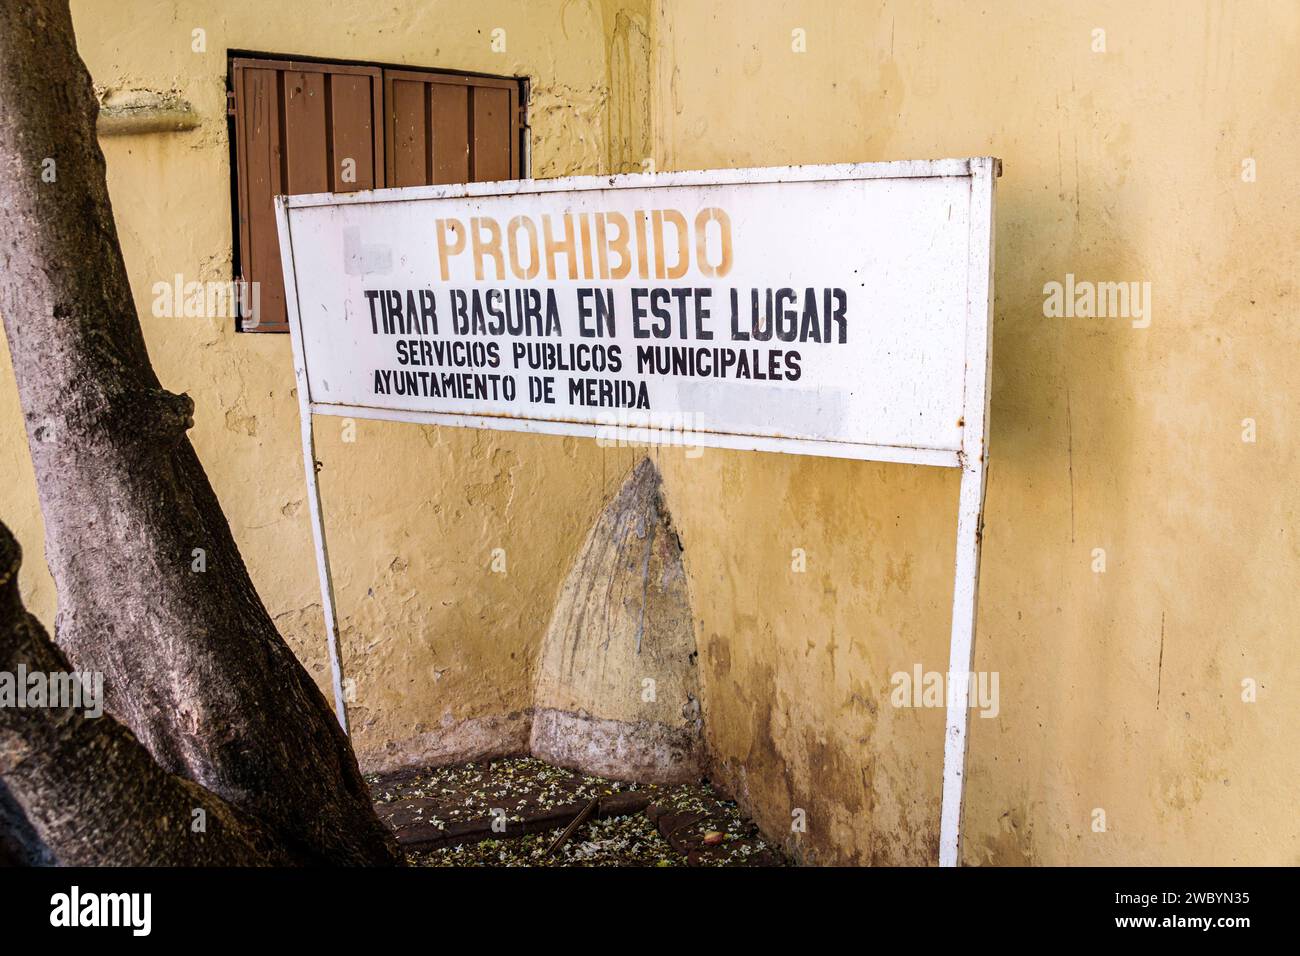 Merida Mexique, centro historico quartier historique central, jeter des déchets interdits, mairie signe de service public avertissement Banque D'Images